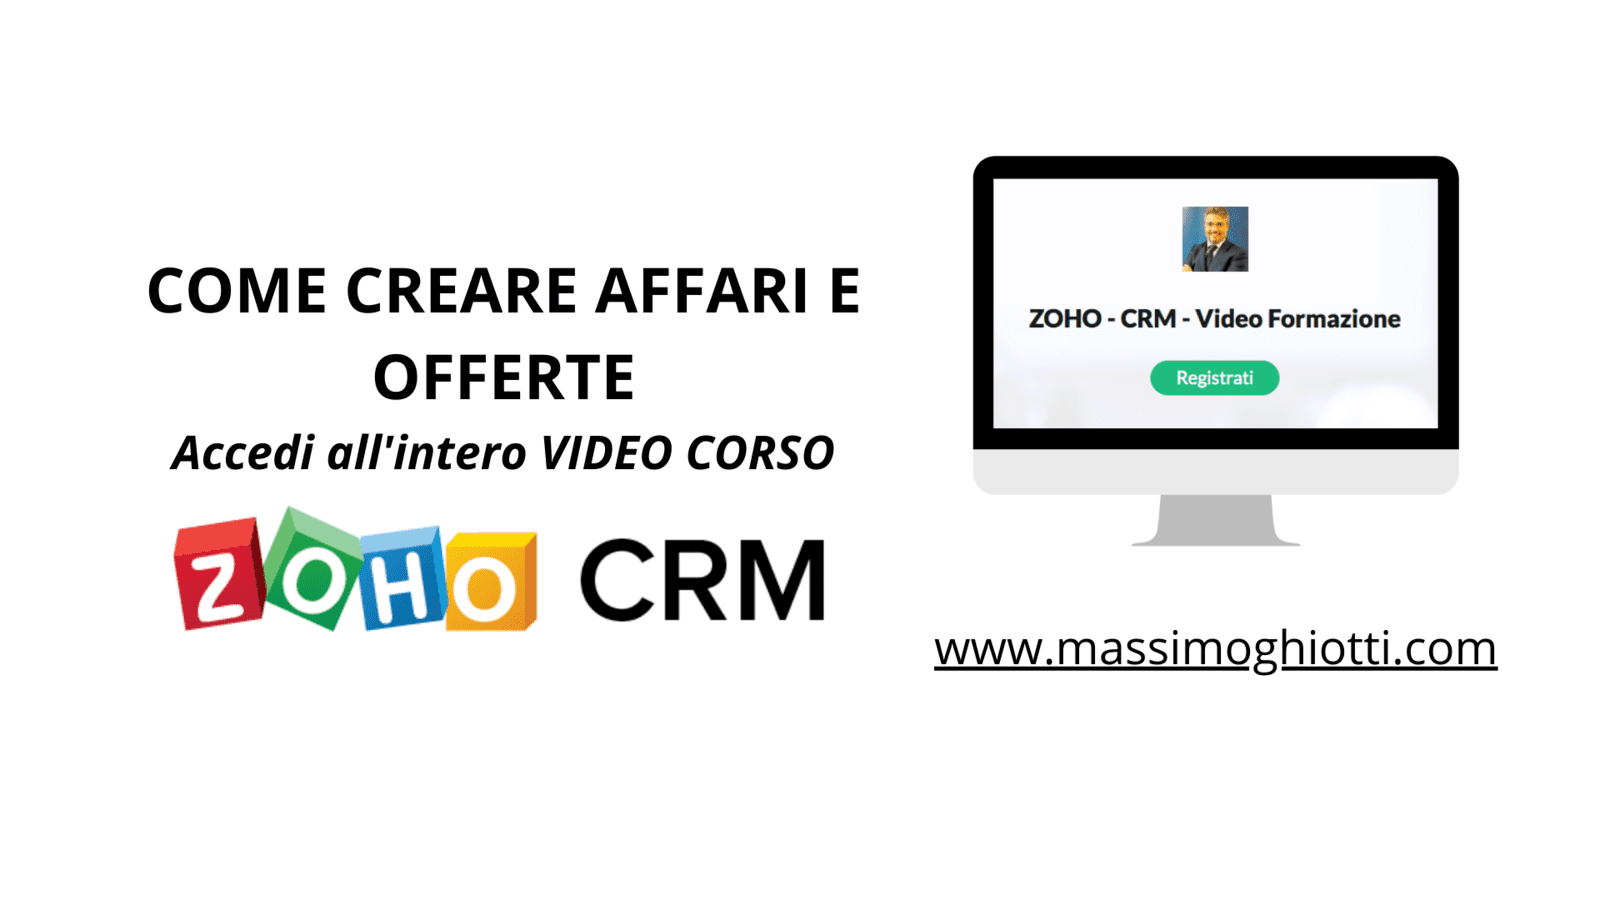 CRM ZOHO - COME CREARE AFFARI E OFFERTE